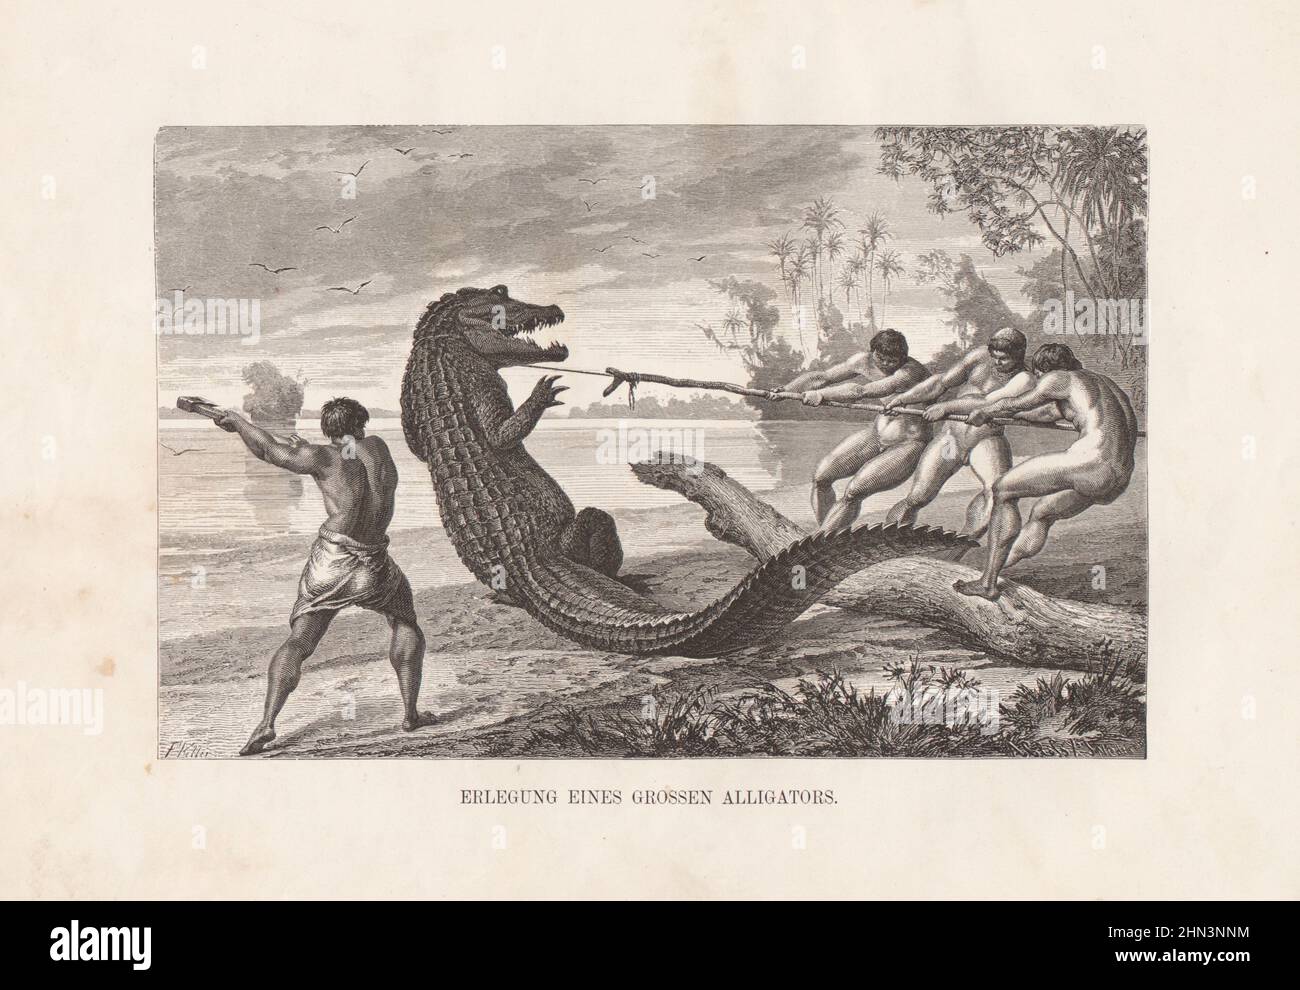 Illustration ancienne de la capture d'un gros alligator. Depuis le livre Franz Keller-Leuzinger, Stuttgart 1874 Banque D'Images